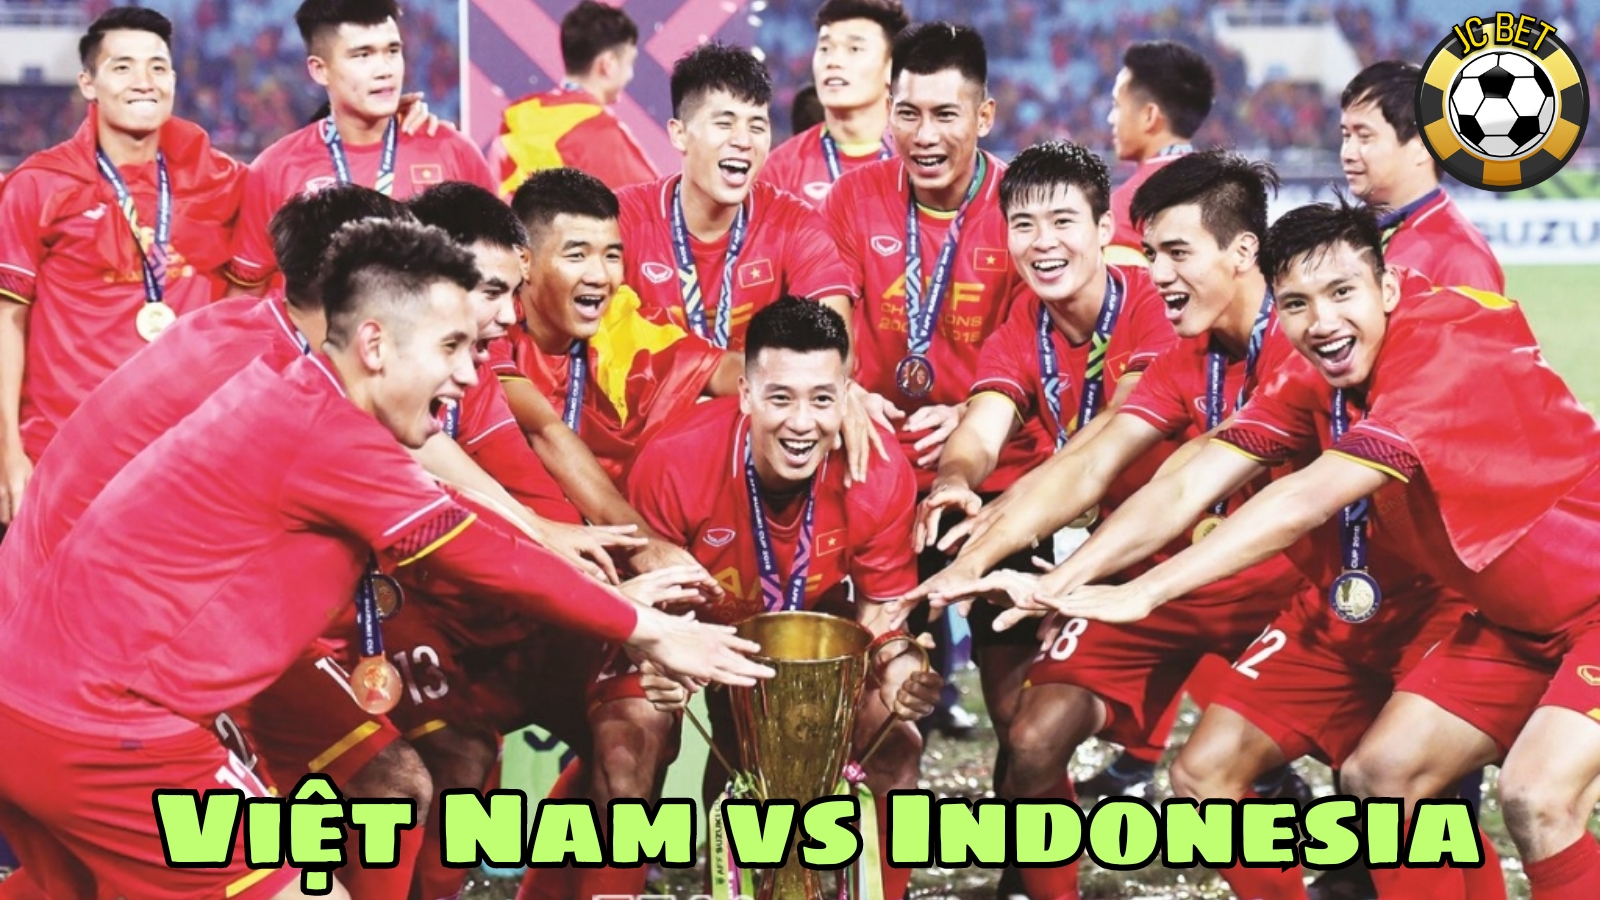 Lịch thi đấu việt nam indonesia vòng loại world cup 2026 mới nhất